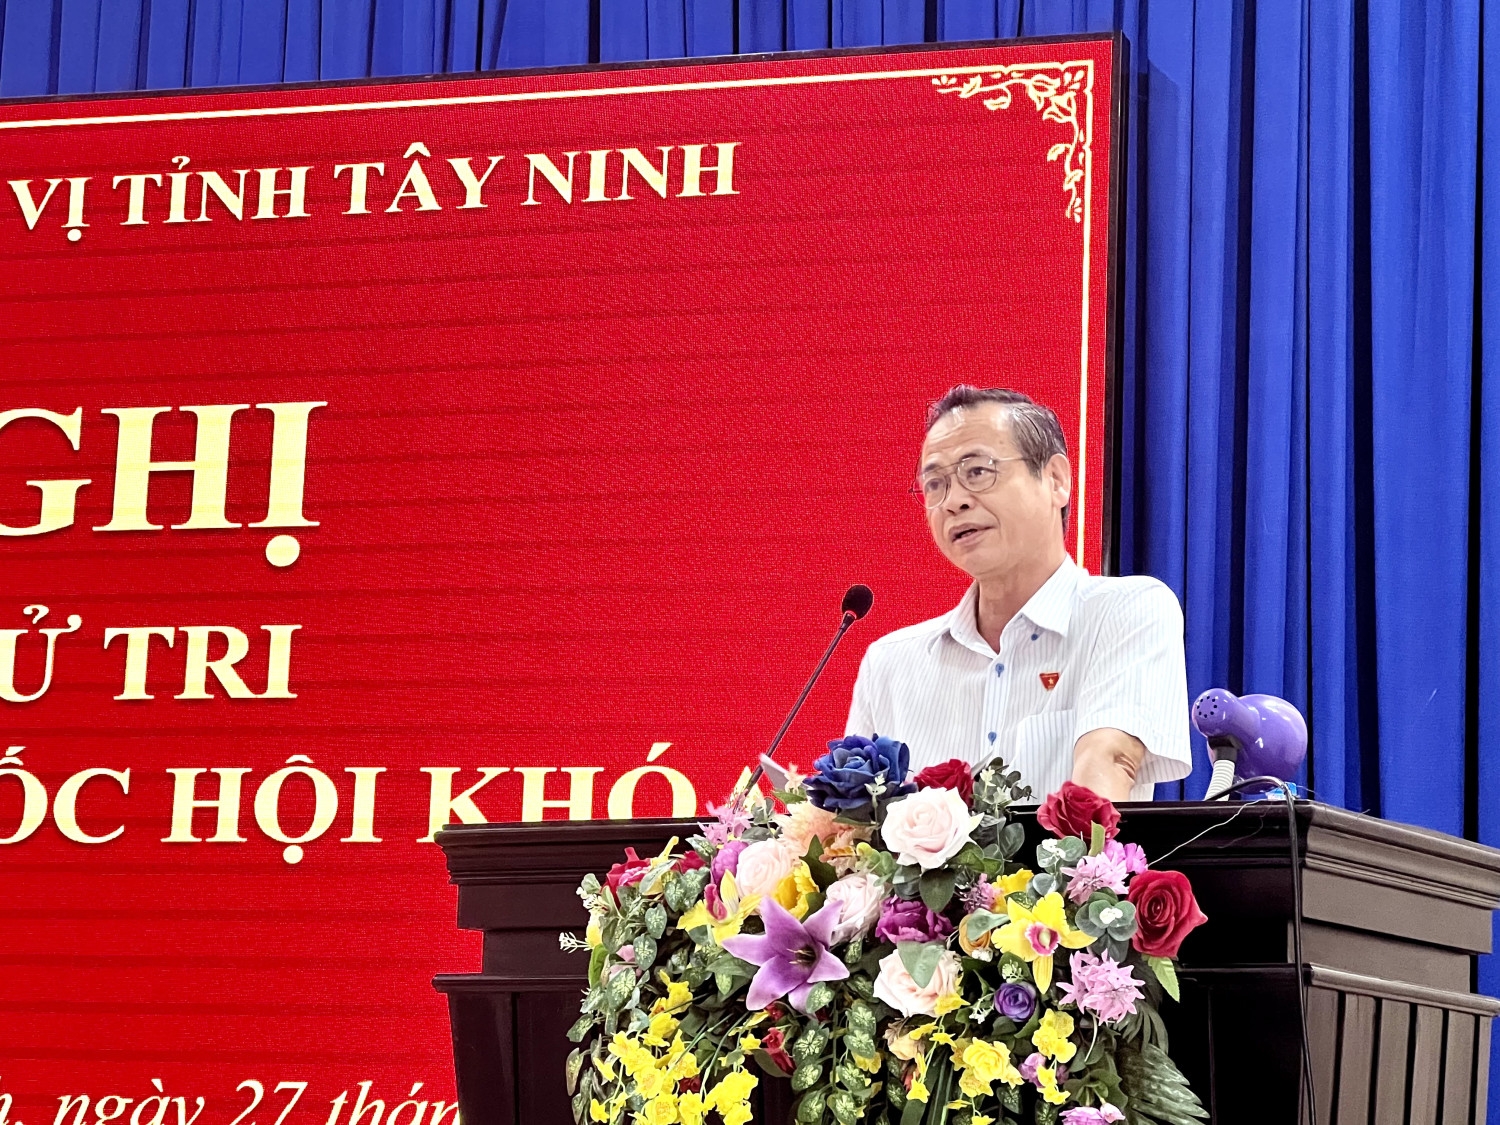 Đại biểu Quốc hội Trần Hữu Hậu phát biểu tại buổi tiếp xúc cử tri Châu Thành